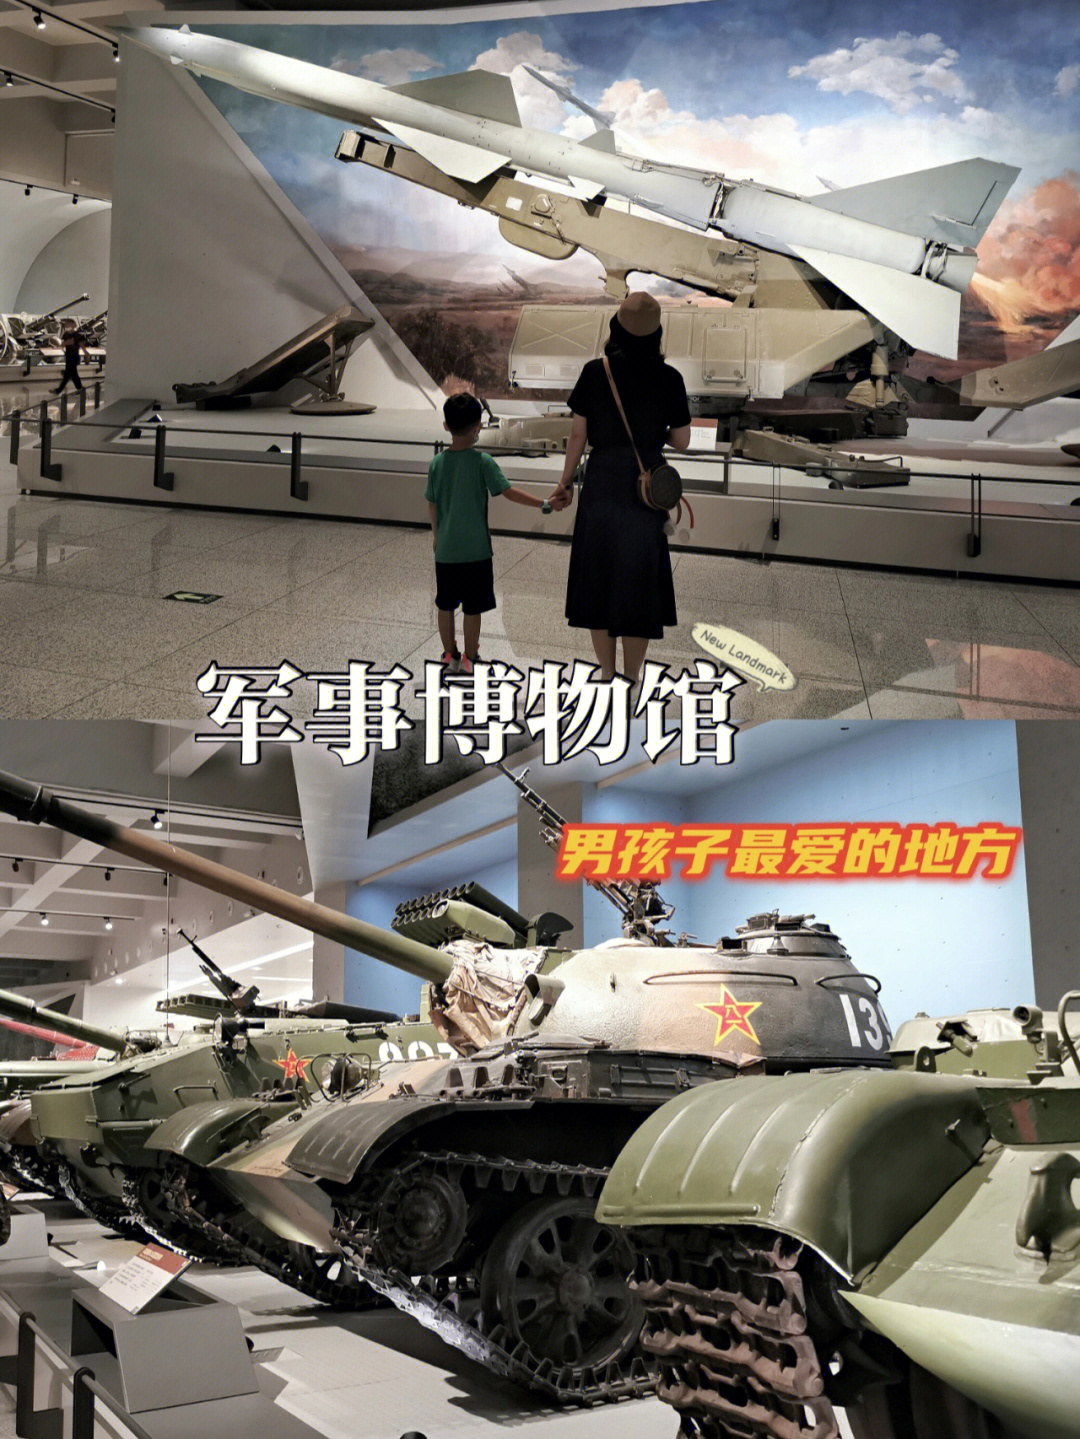 作为我们去北京的第一站,我们选择了中国军事博物馆,首先因为距离最近